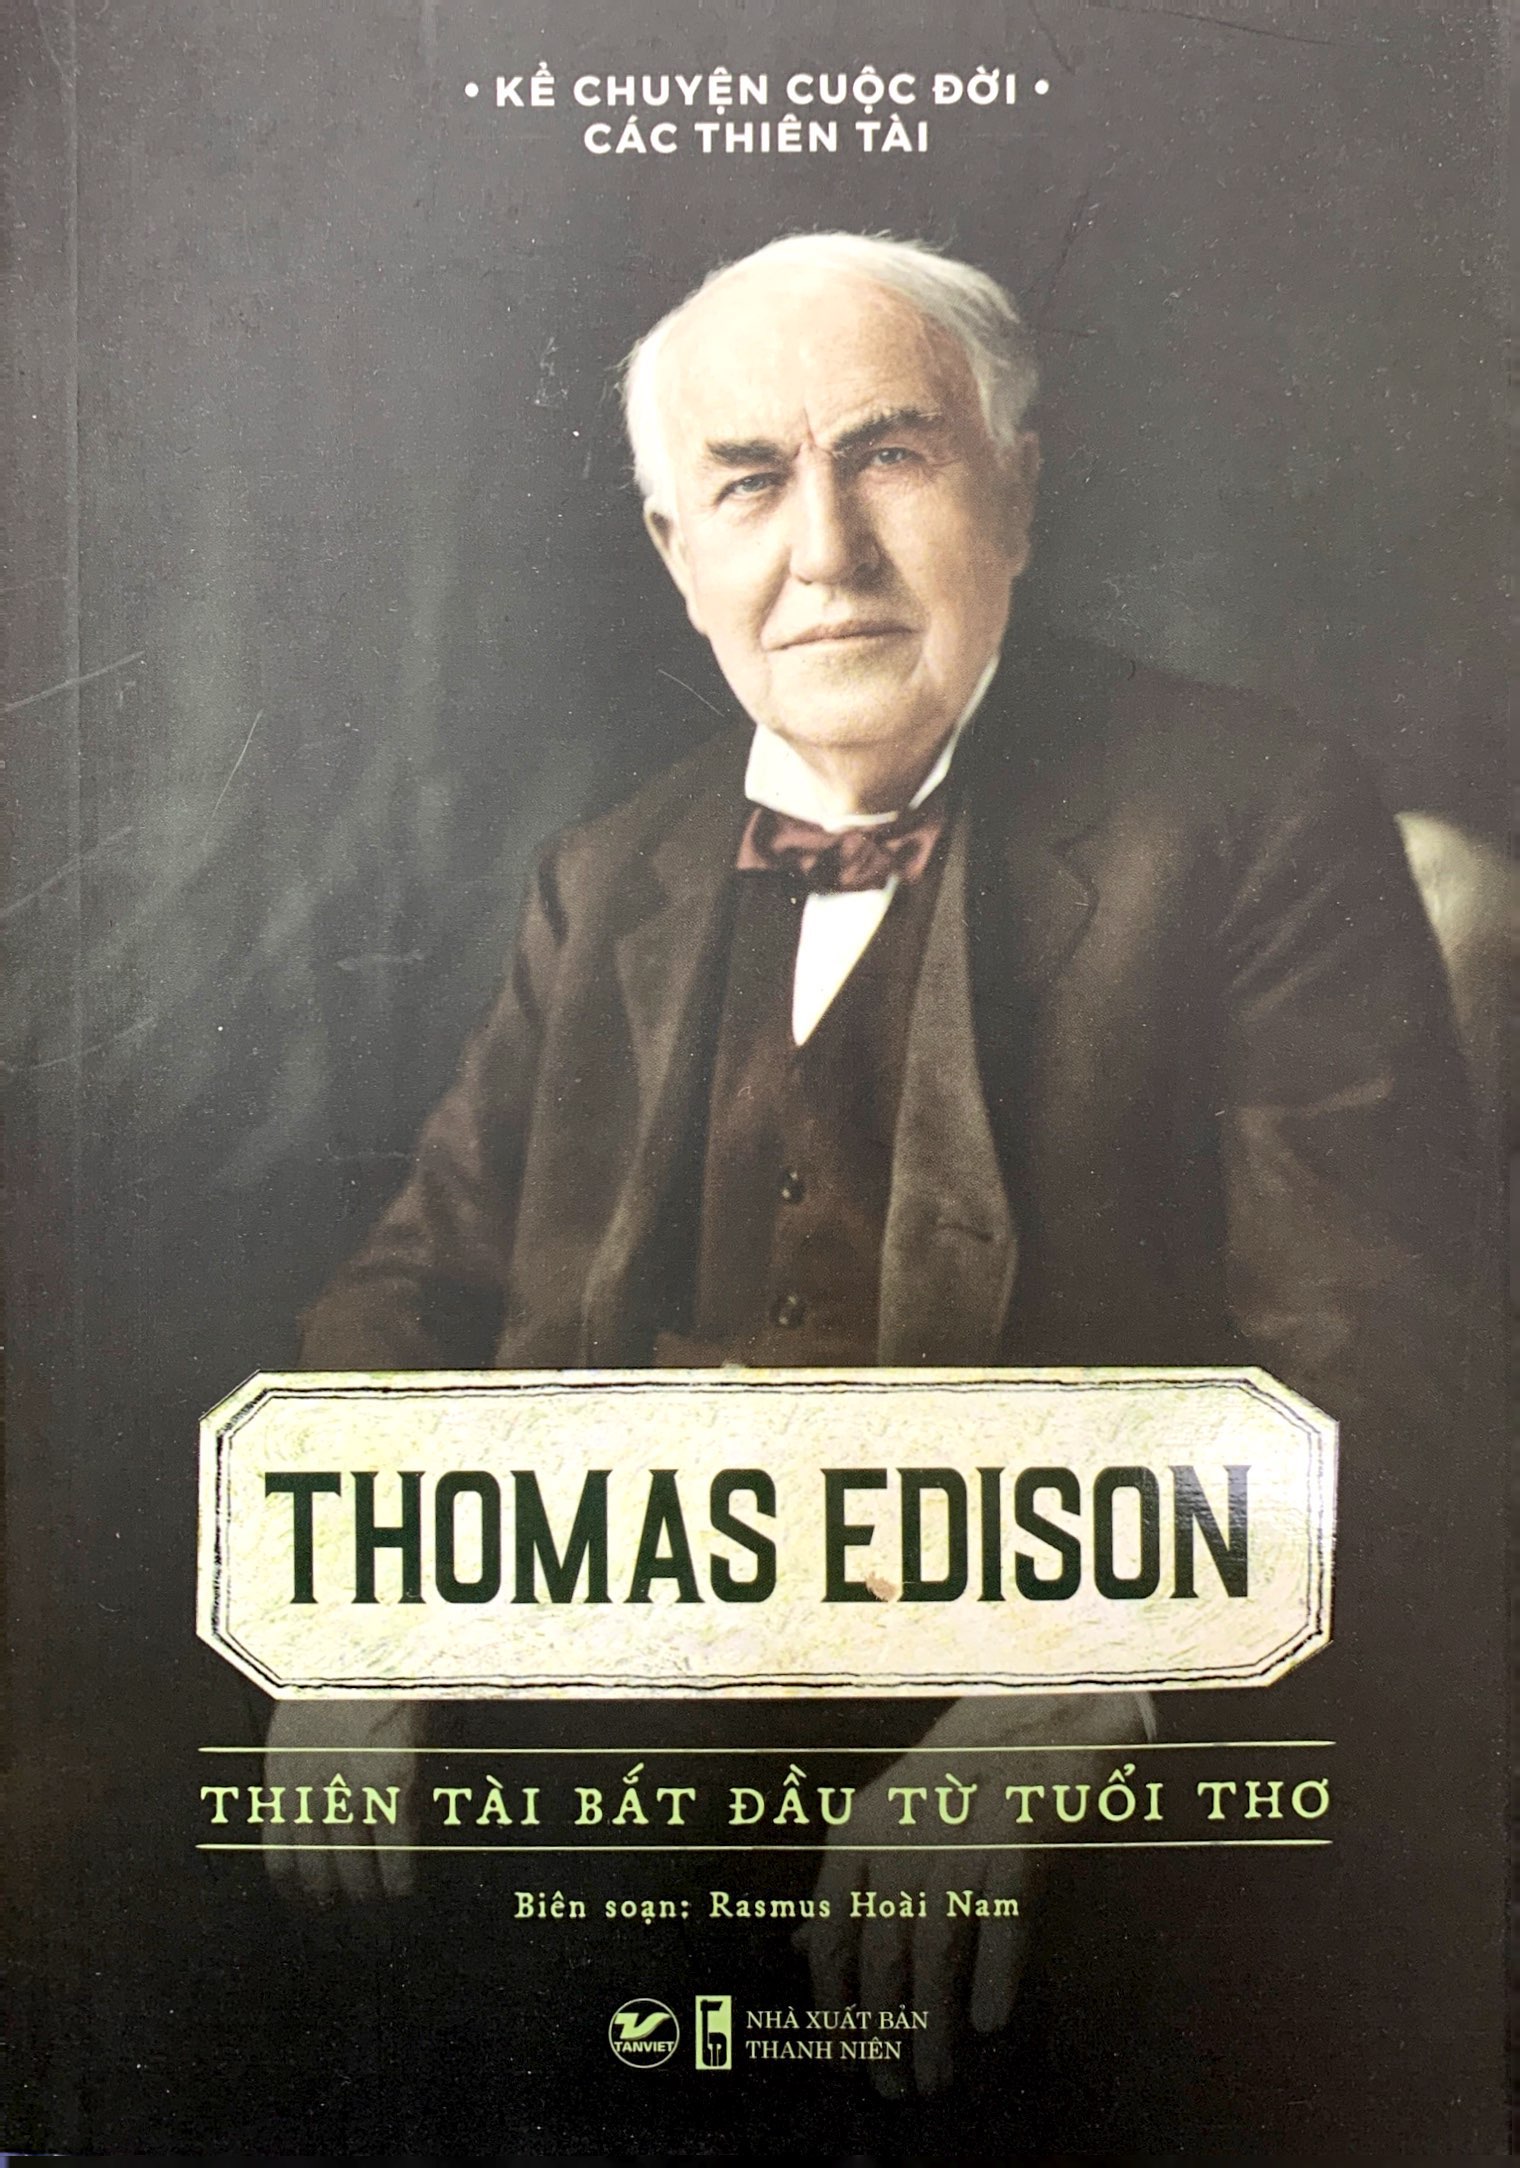 Kể Chuyện Cuộc Đời Các Thiên Tài: Thomas Edison - Thiên Tài Bắt Đầu Từ Tuổi Thơ PDF